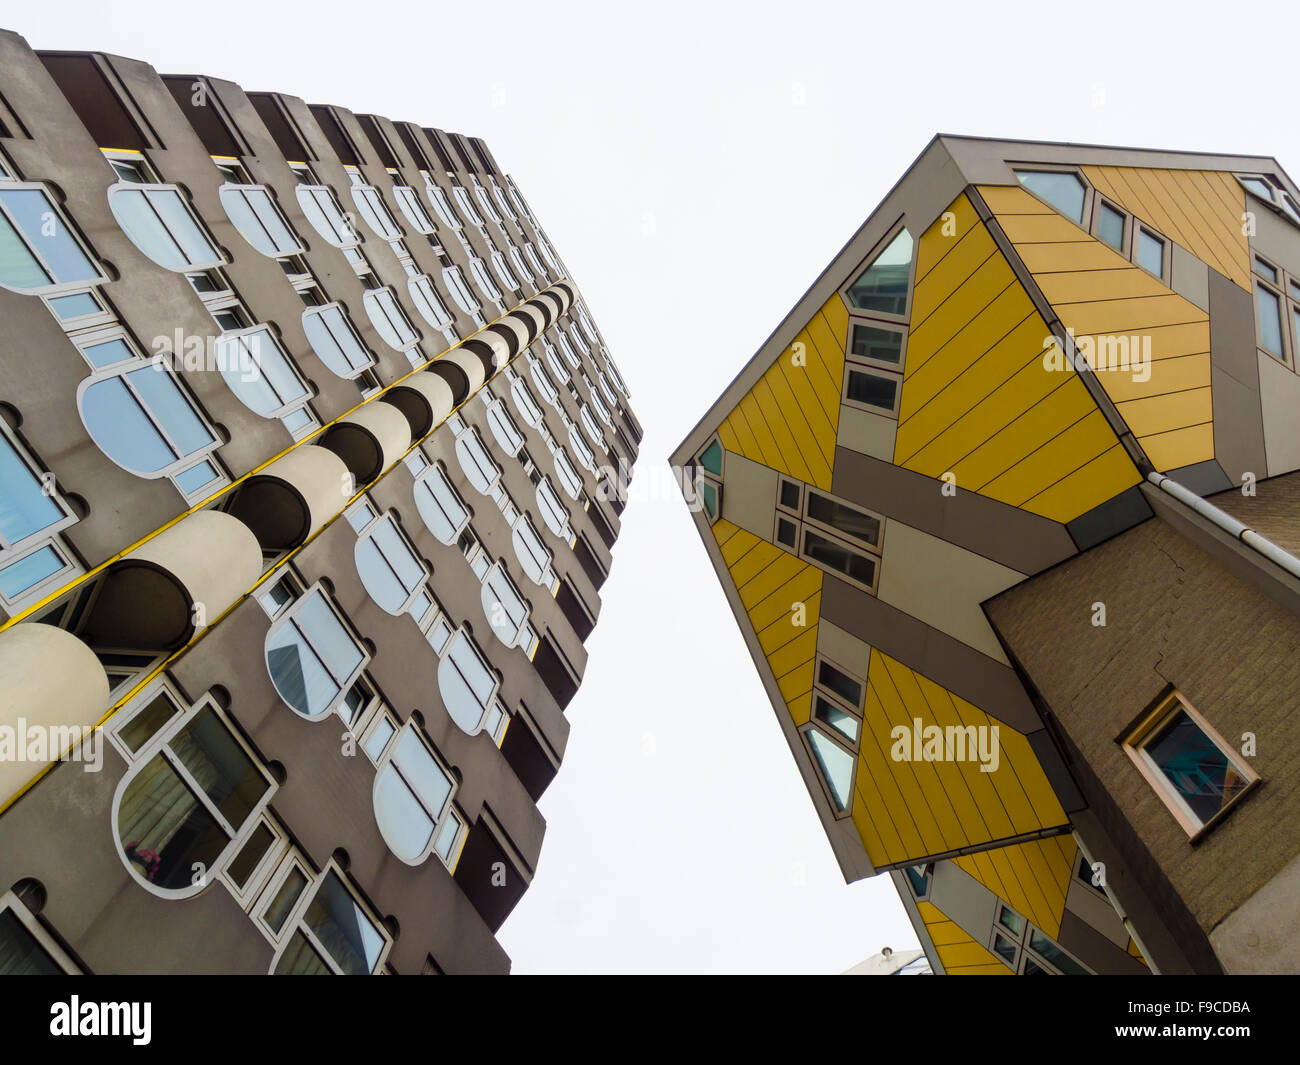 Die Kubushäuser (Kubuswoningen) des Architekten Piet Blom neben benachbarten "Blaakse Bos' (links) in Rotterdam, Niederlande. Stockfoto